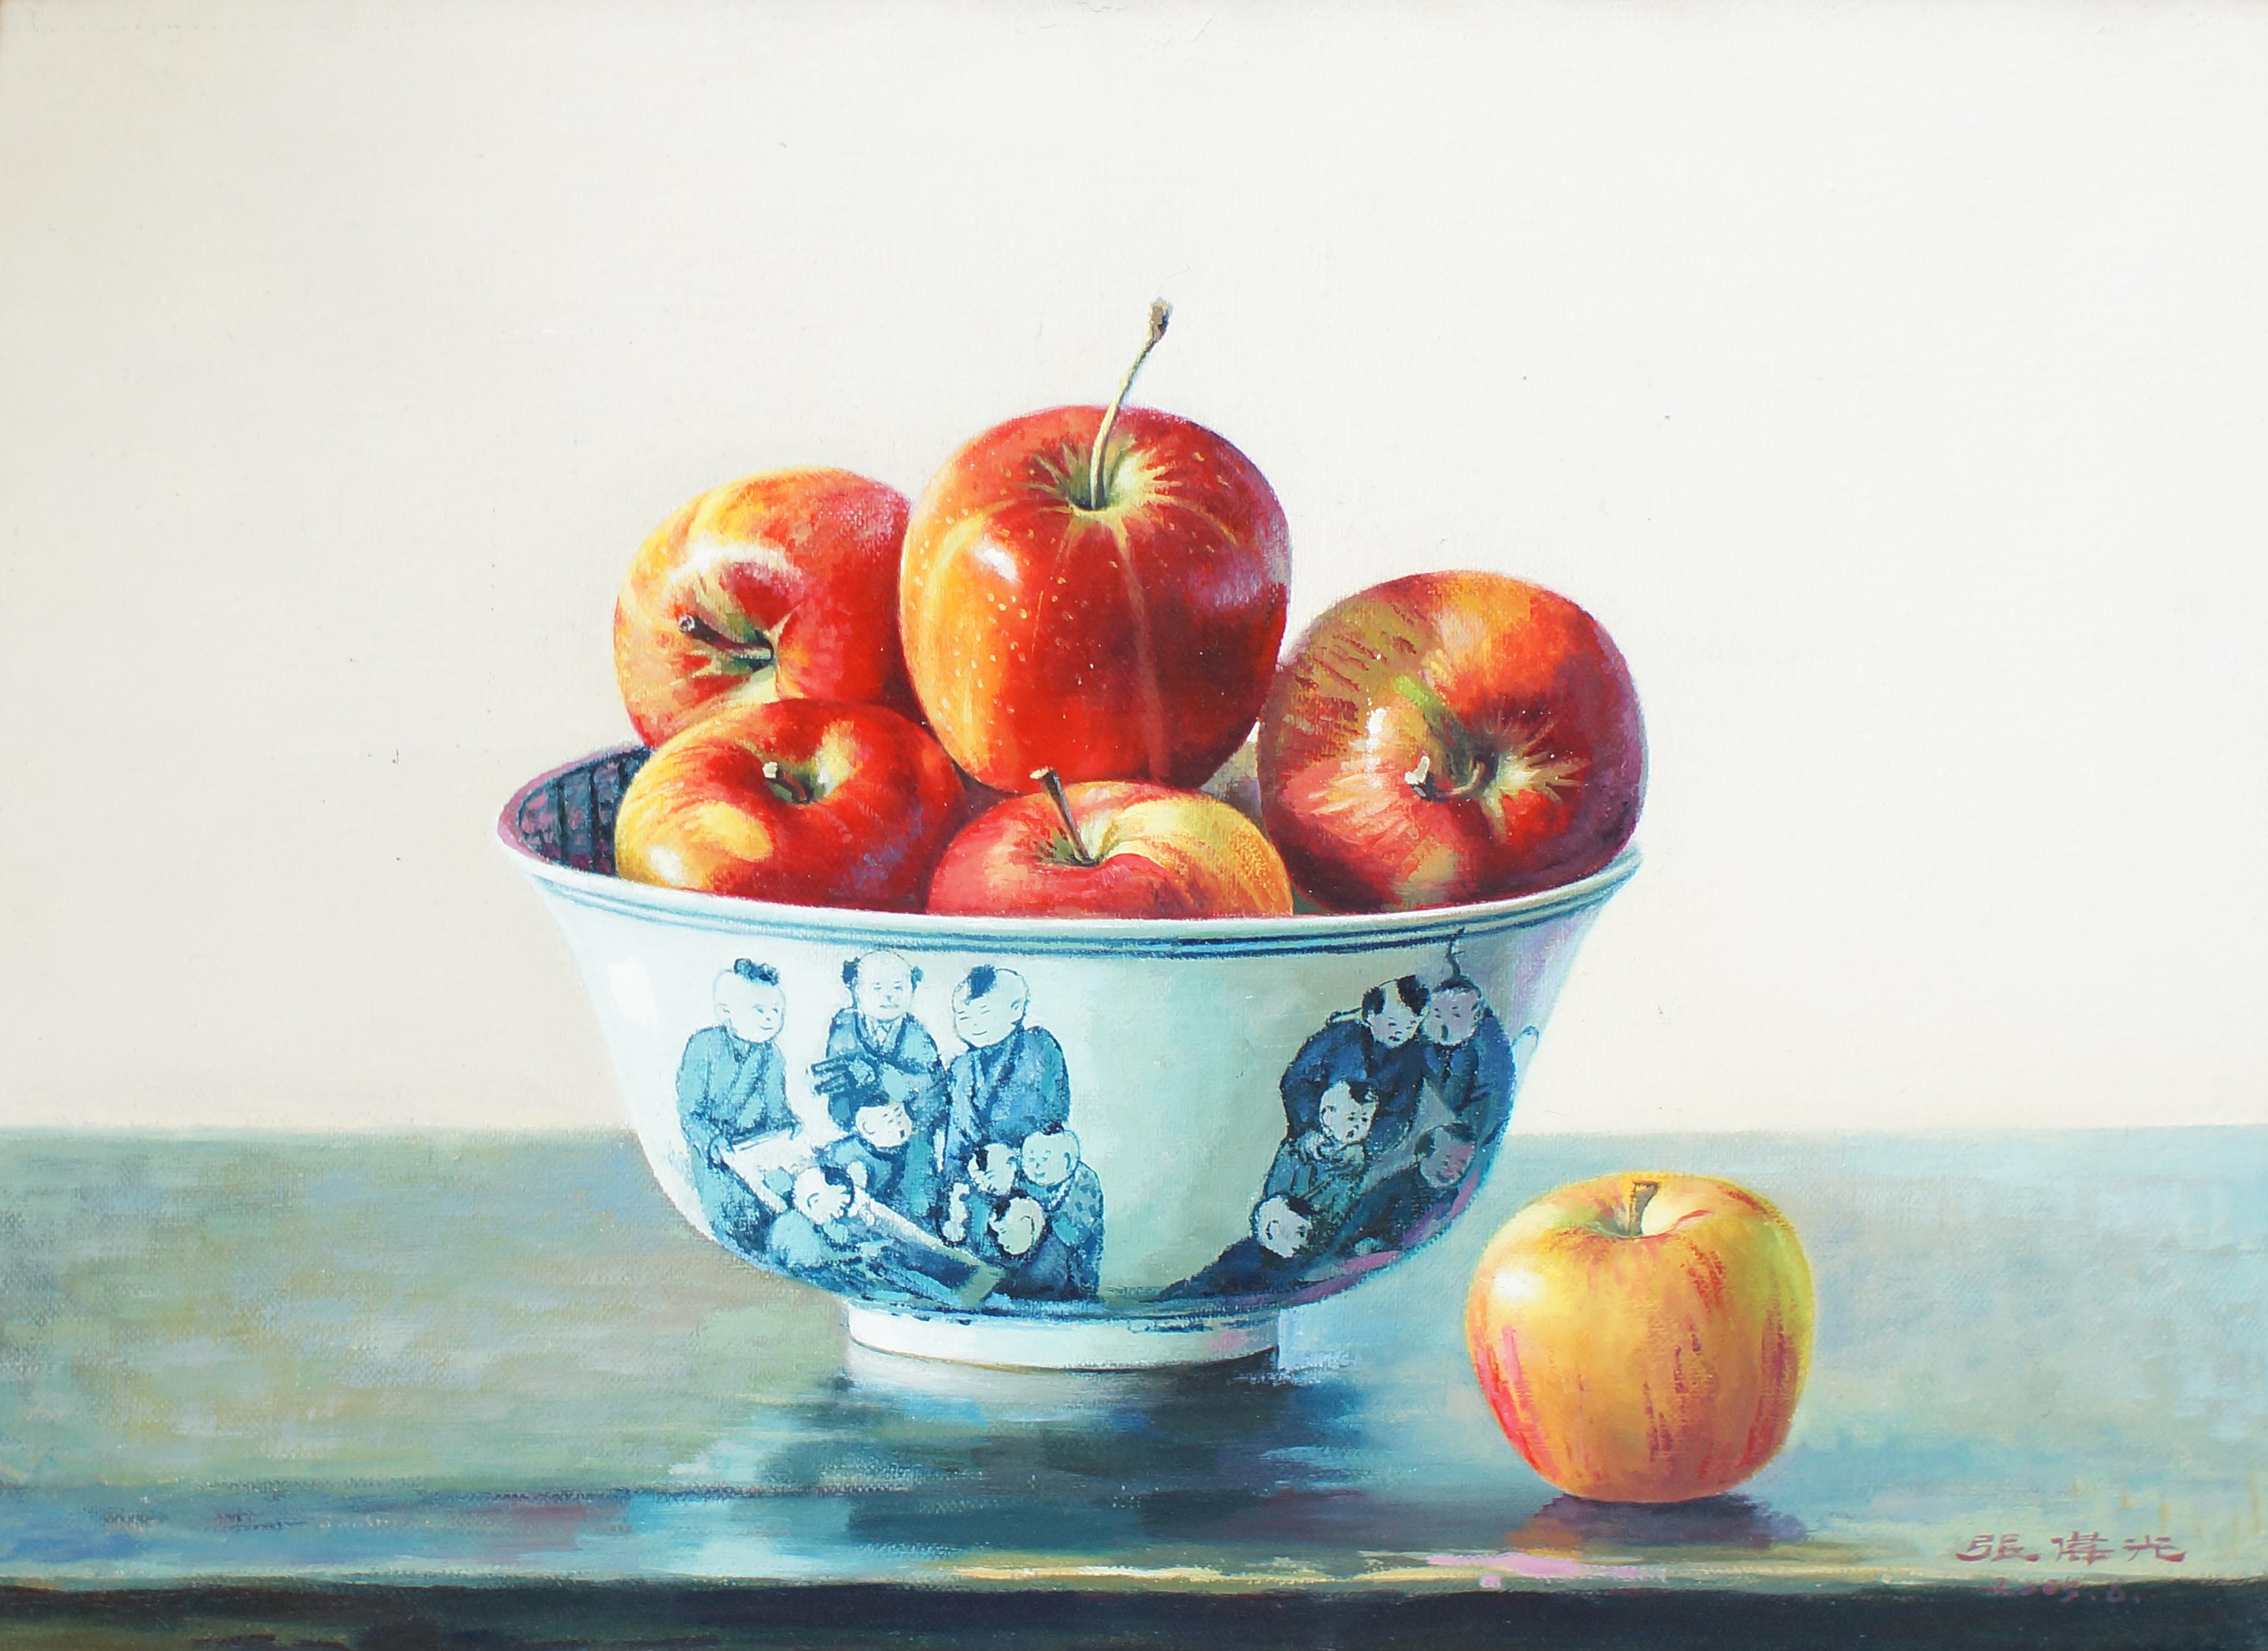 Nature morte aux pommes dans un pot en porcelaine chinoise par le peintre chinois Zhang Wei Guang (Miroir).
Excellentes conditions.

Zhang Wei Guang, également appelé "miroir", est né à Helong Jang, en Chine, en 1968. Il a étudié à l'université des